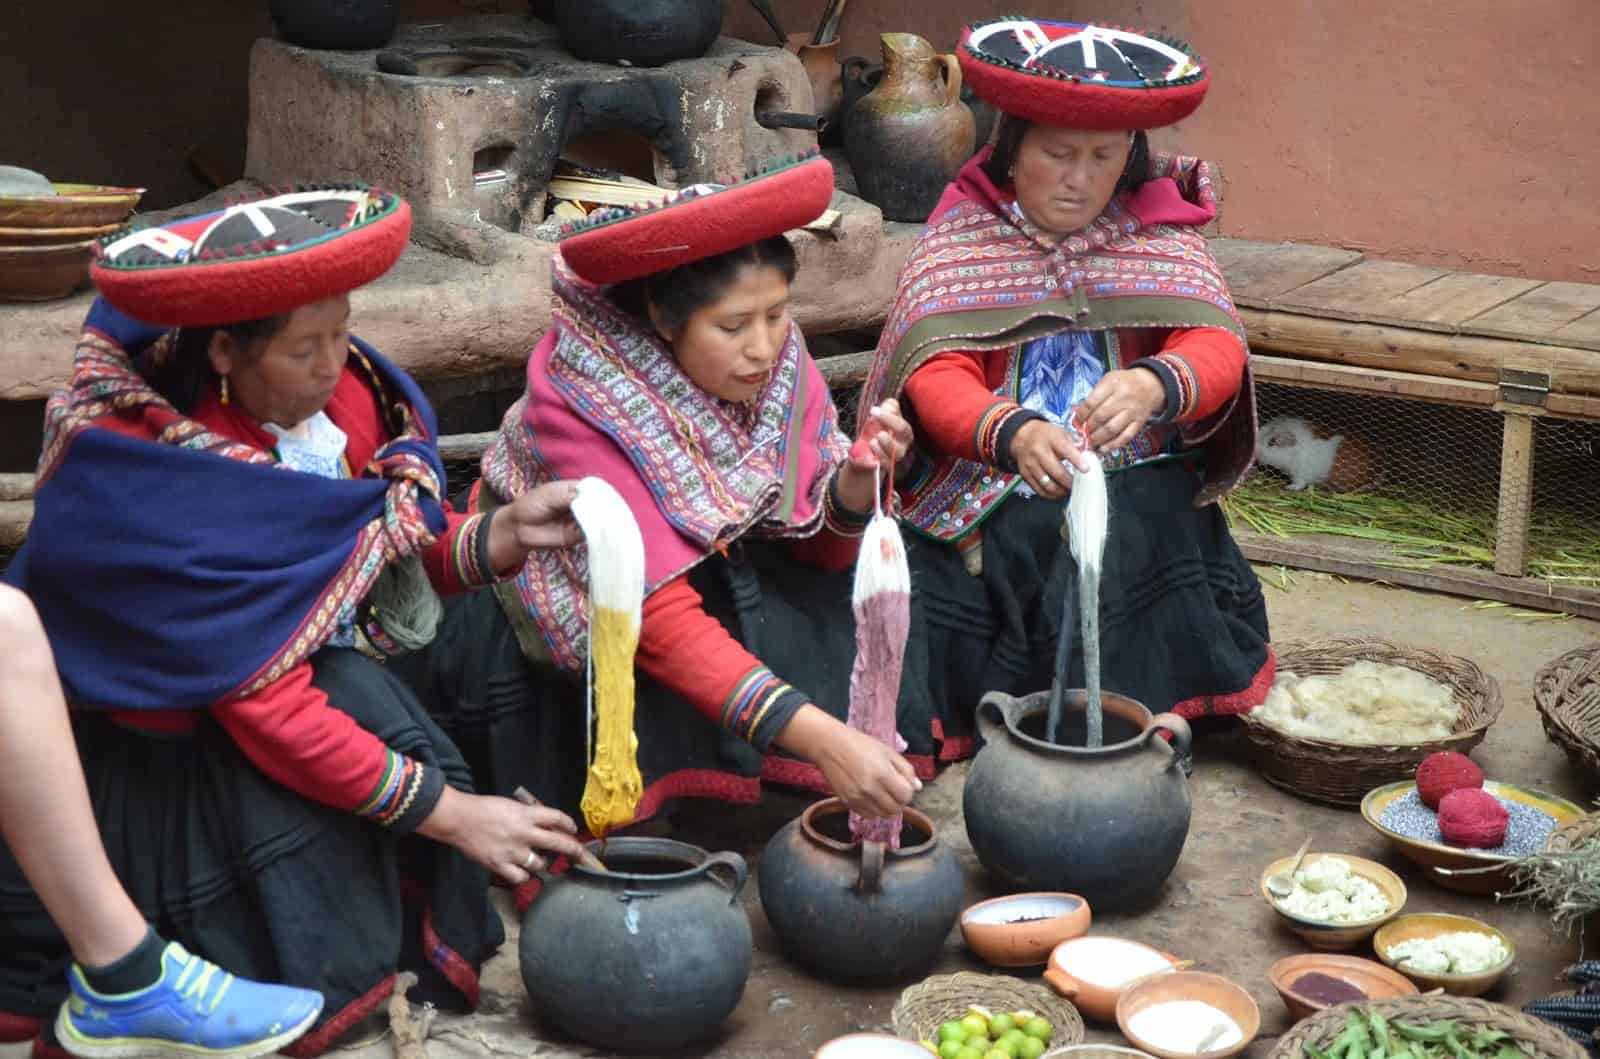 Chinchero craft market in Peru